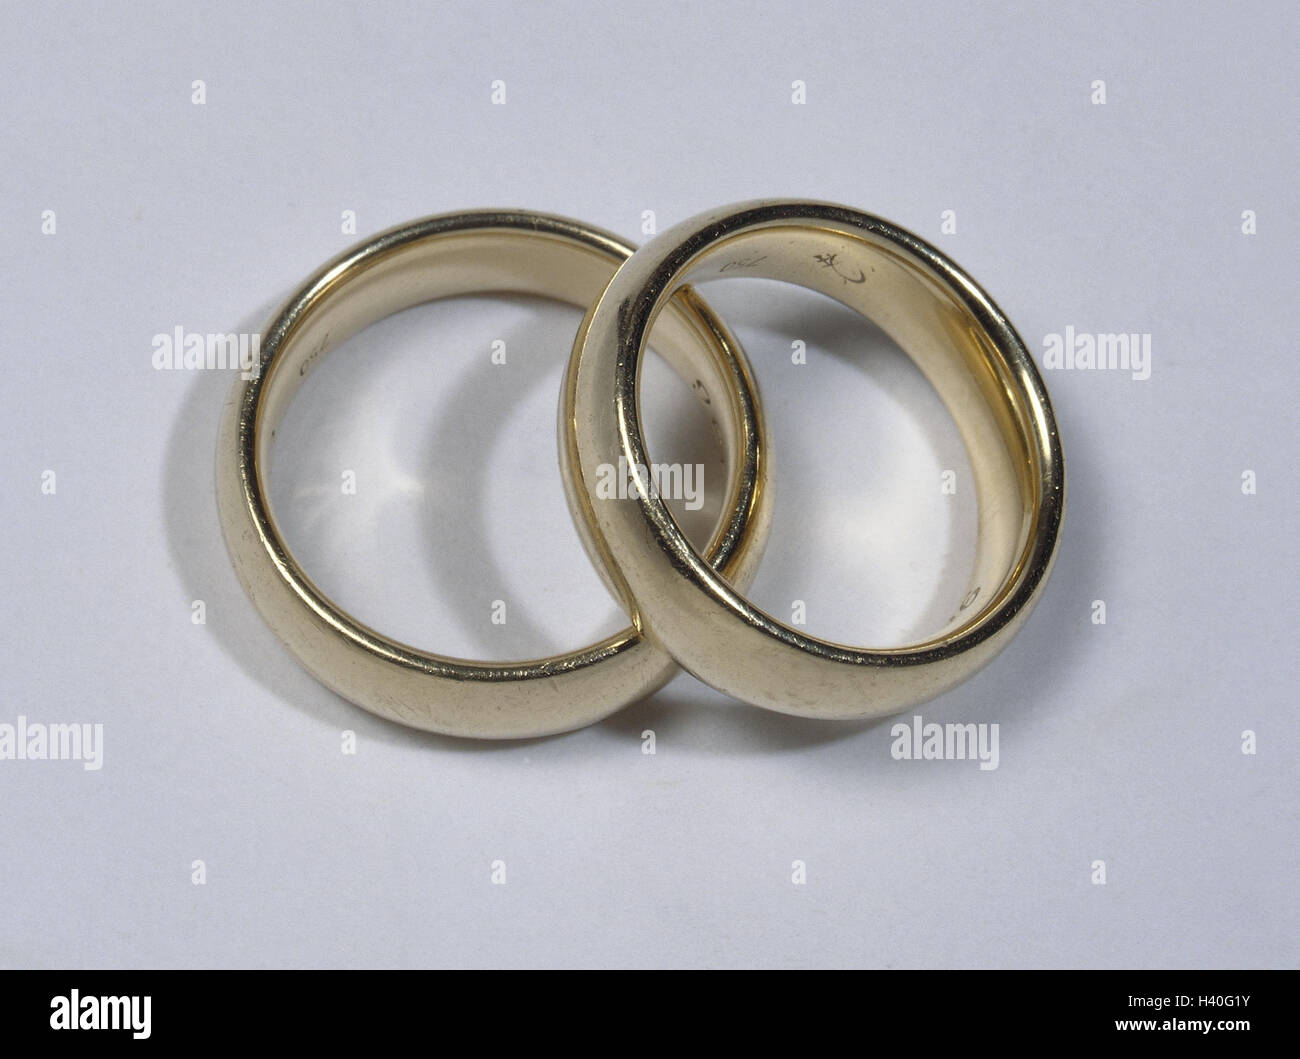 Bodegón de anillos de bodas de oro. Fondo romántico de joyas y matrimonio.  Stock Photo